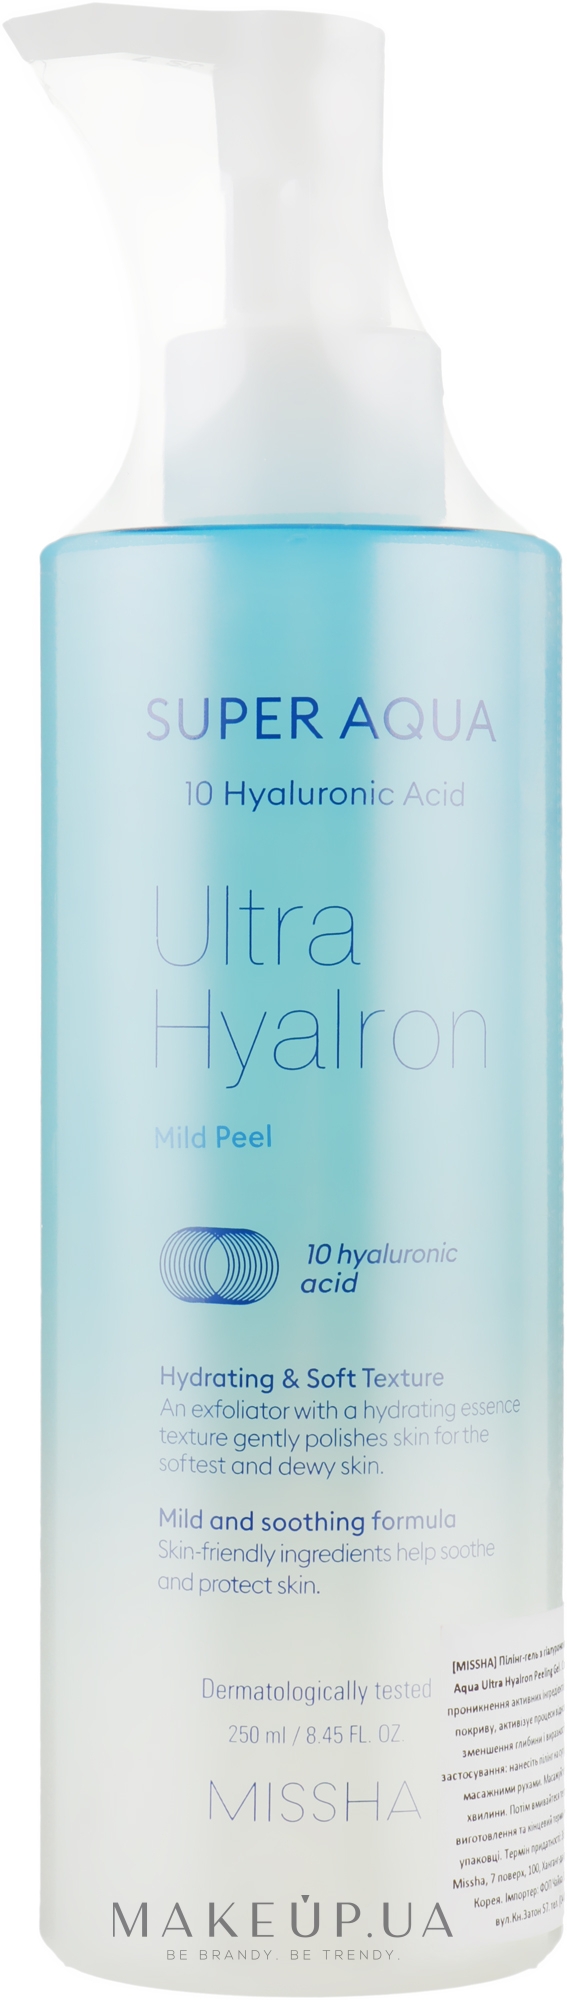 Мягкий пилинг-гель с гиалуроновой кислотой - Missha Super Aqua Ultra Hyalron Mild Peel — фото 250ml